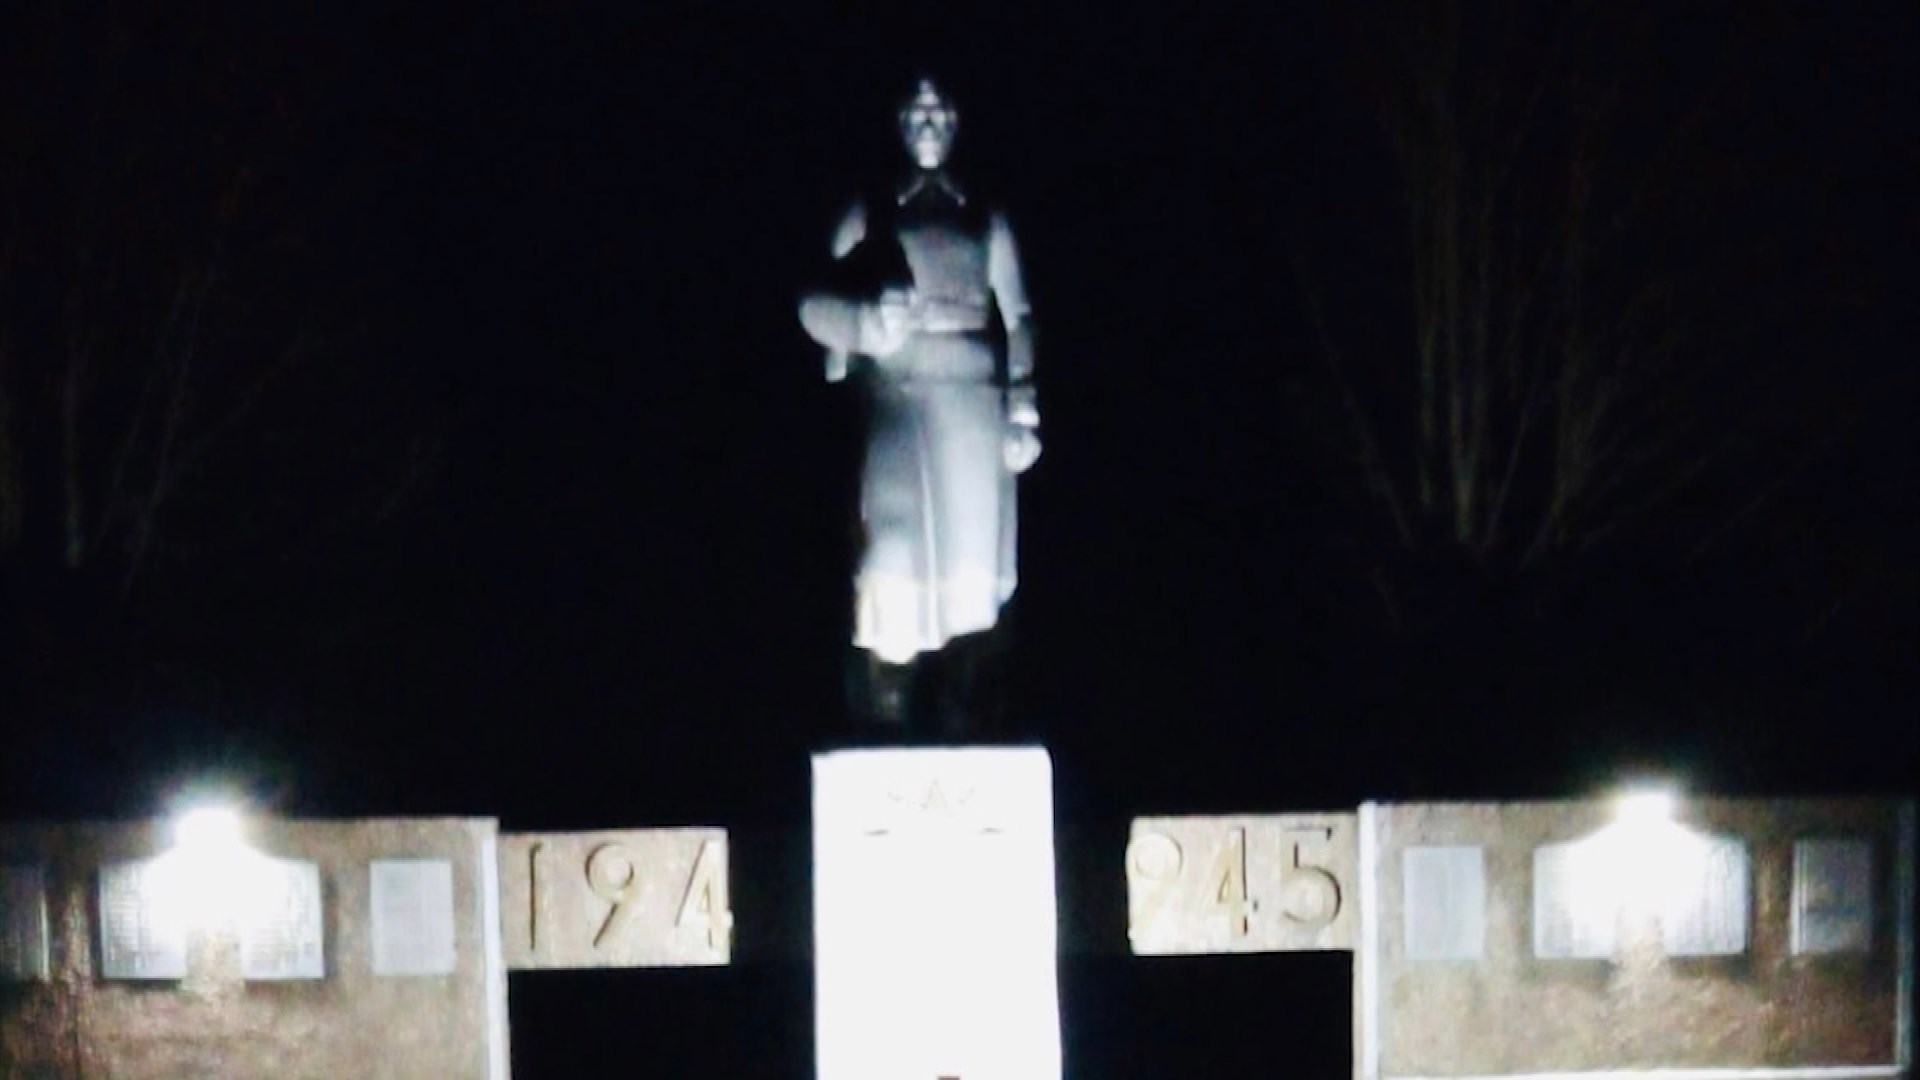 Мемориал в костромской деревне Крутая будет освещаться по ночам